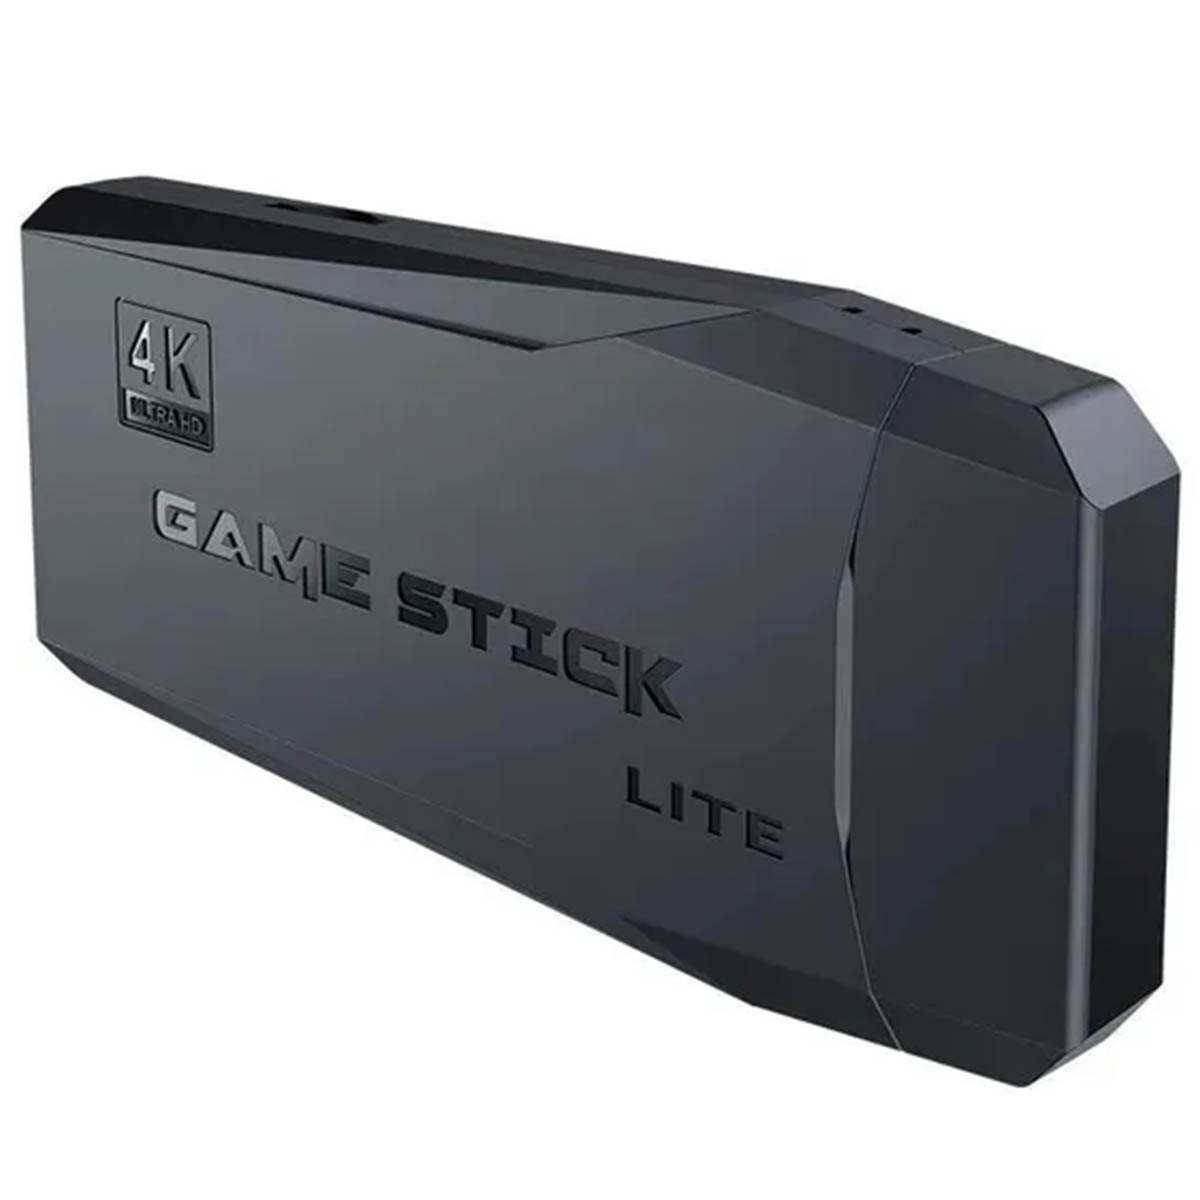 Игровая приставка Lite Game 2, более 5000 игр, 2 беспроводных геймпада (джостик), карта памяти 128 Gb, цвет черный